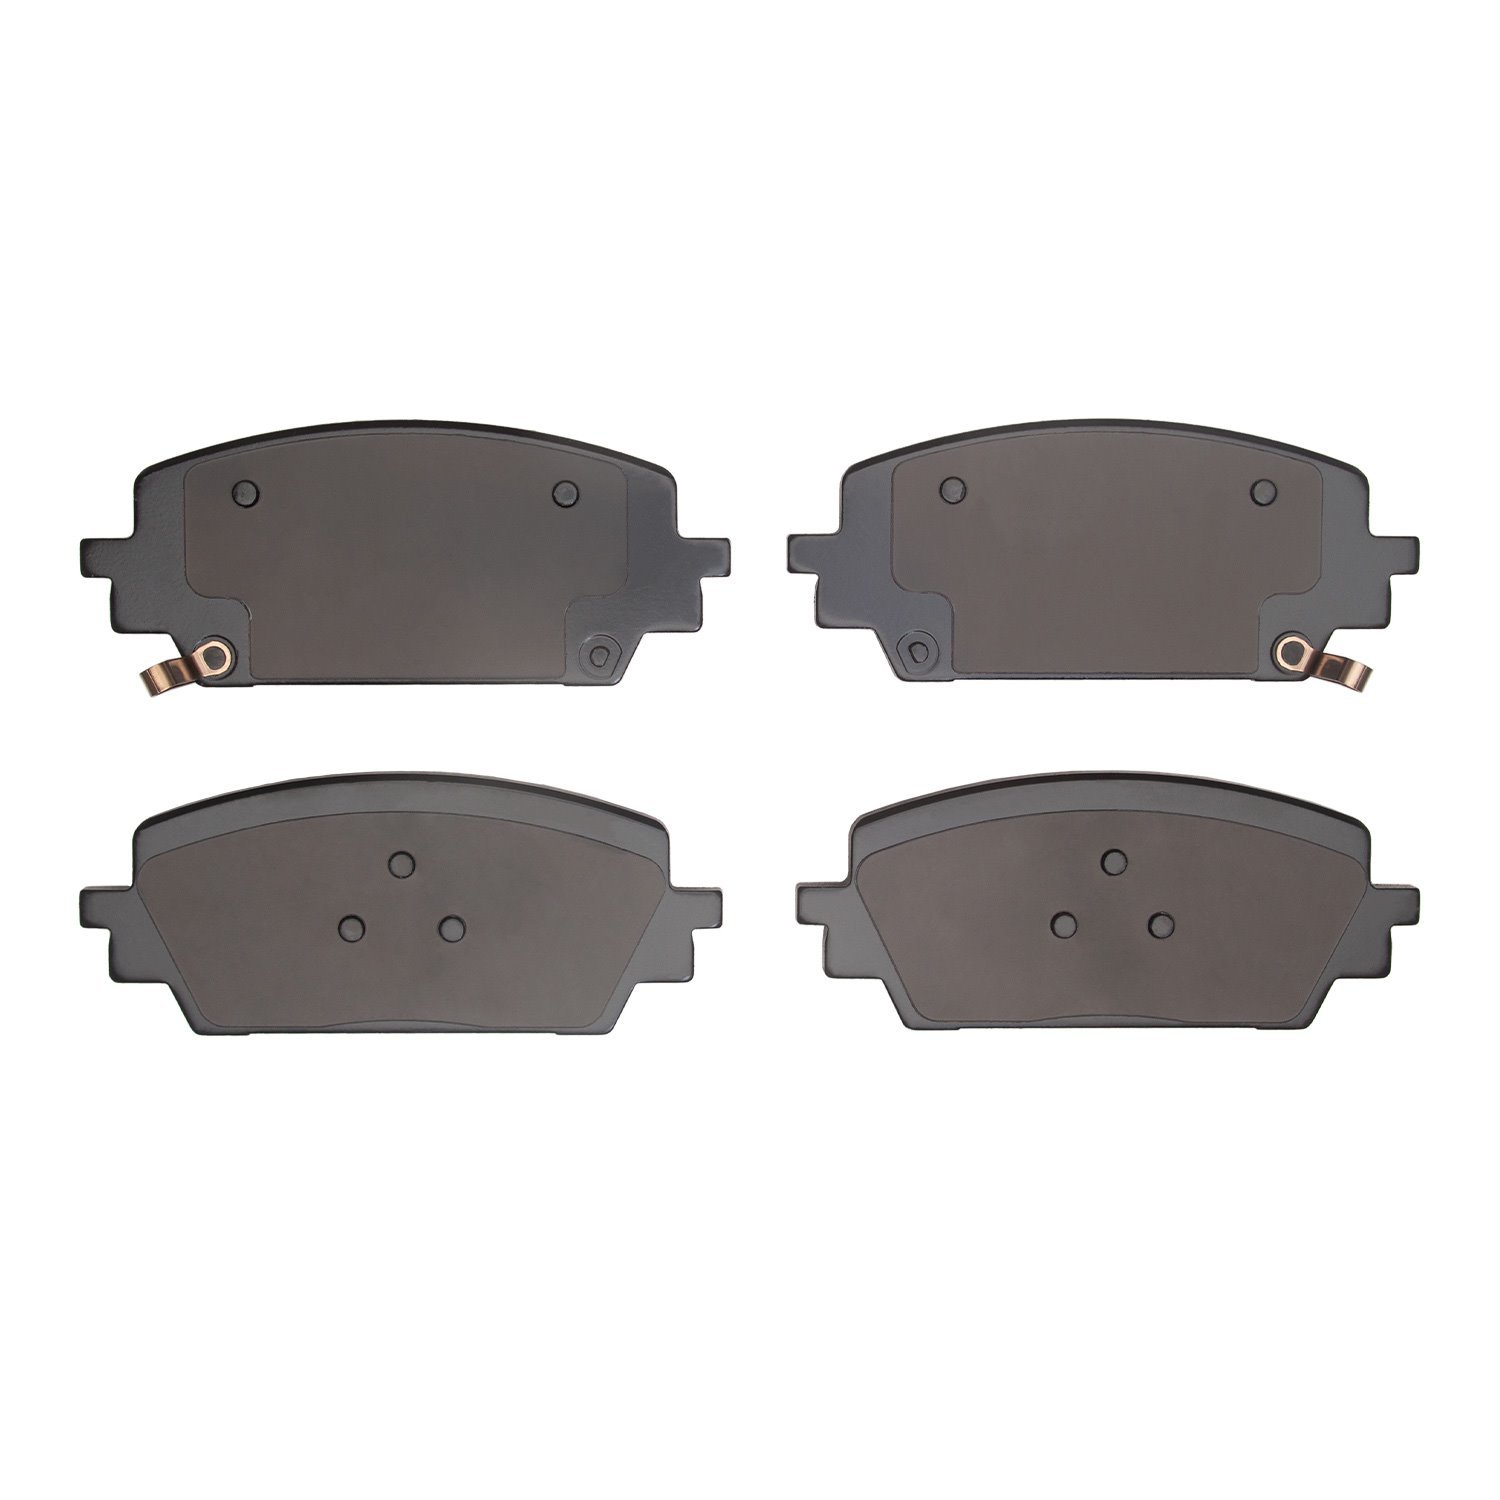 1310-2380-00 3000-Series Ceramic Brake Pads, Fits Select Kia/Hyundai/Genesis, Position: Front